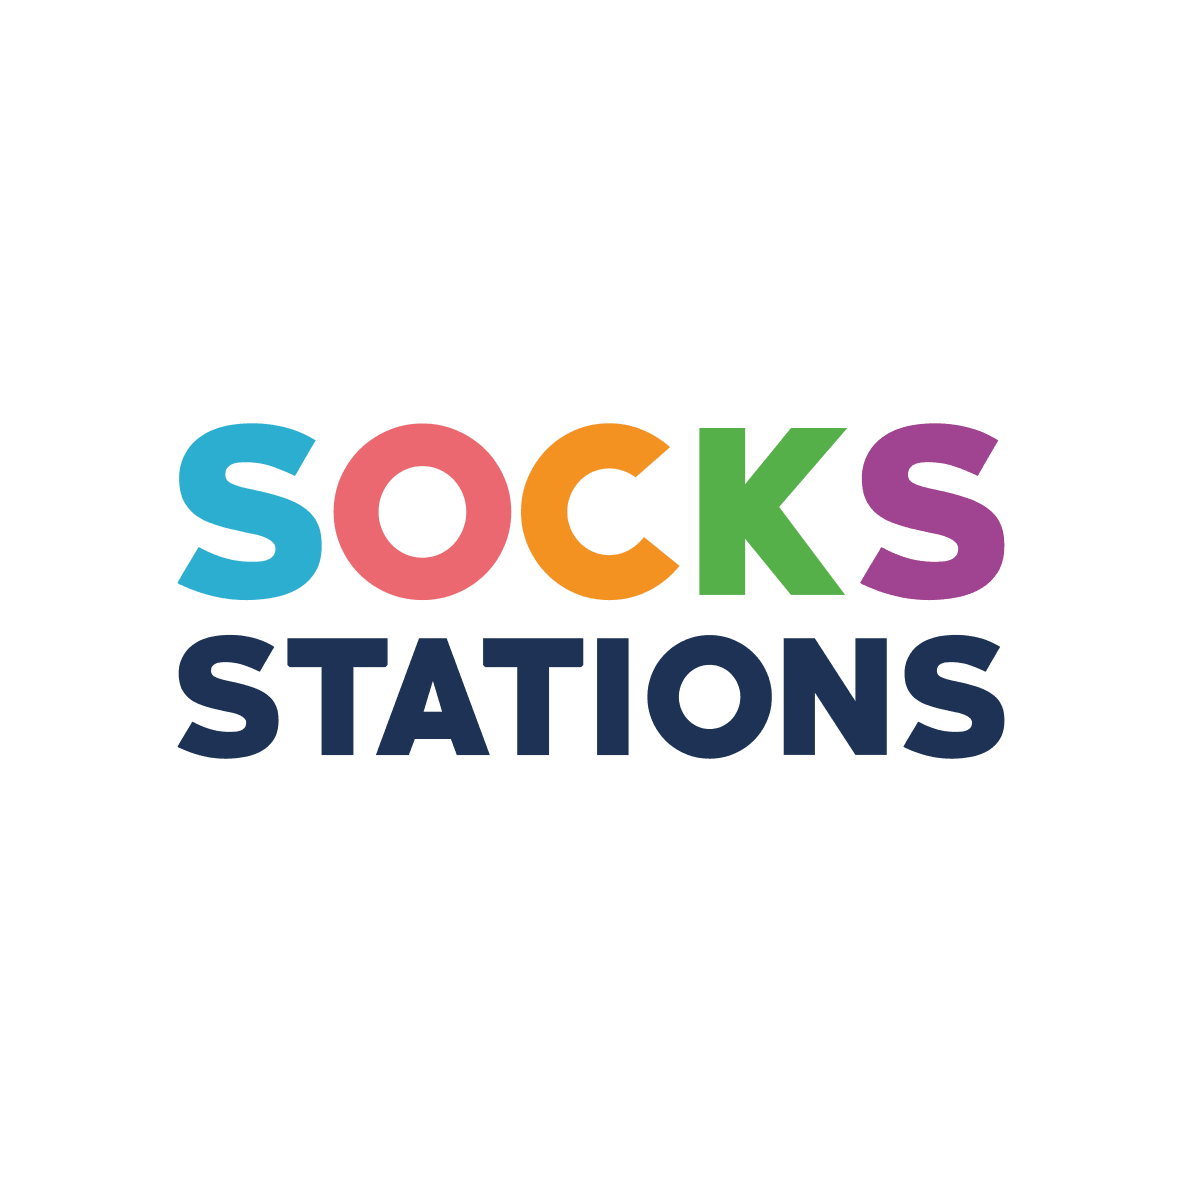 socksstations